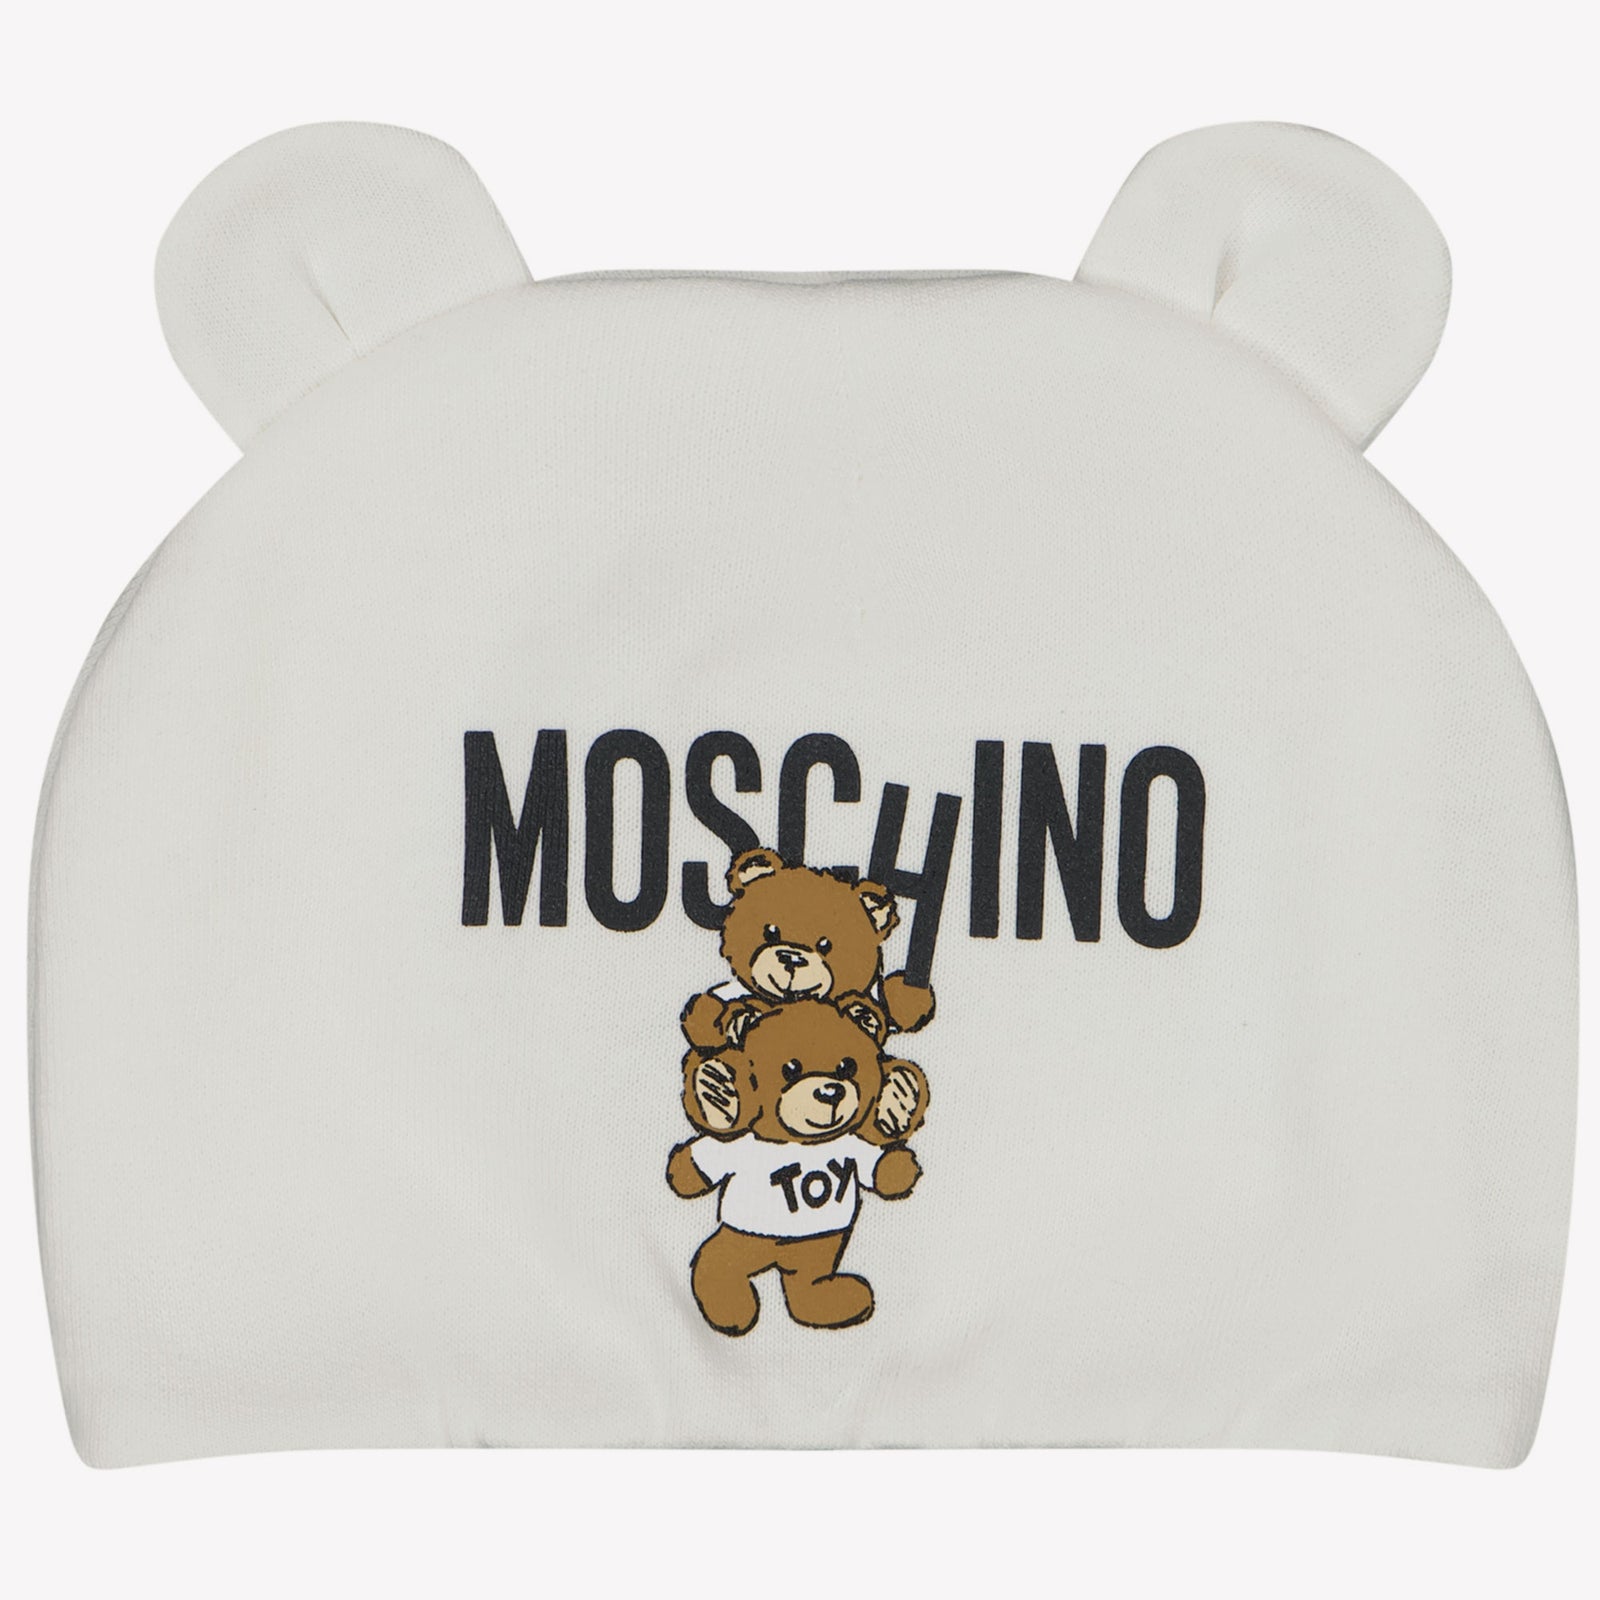 Moschino 赤ちゃんのユニセックスの帽子は白